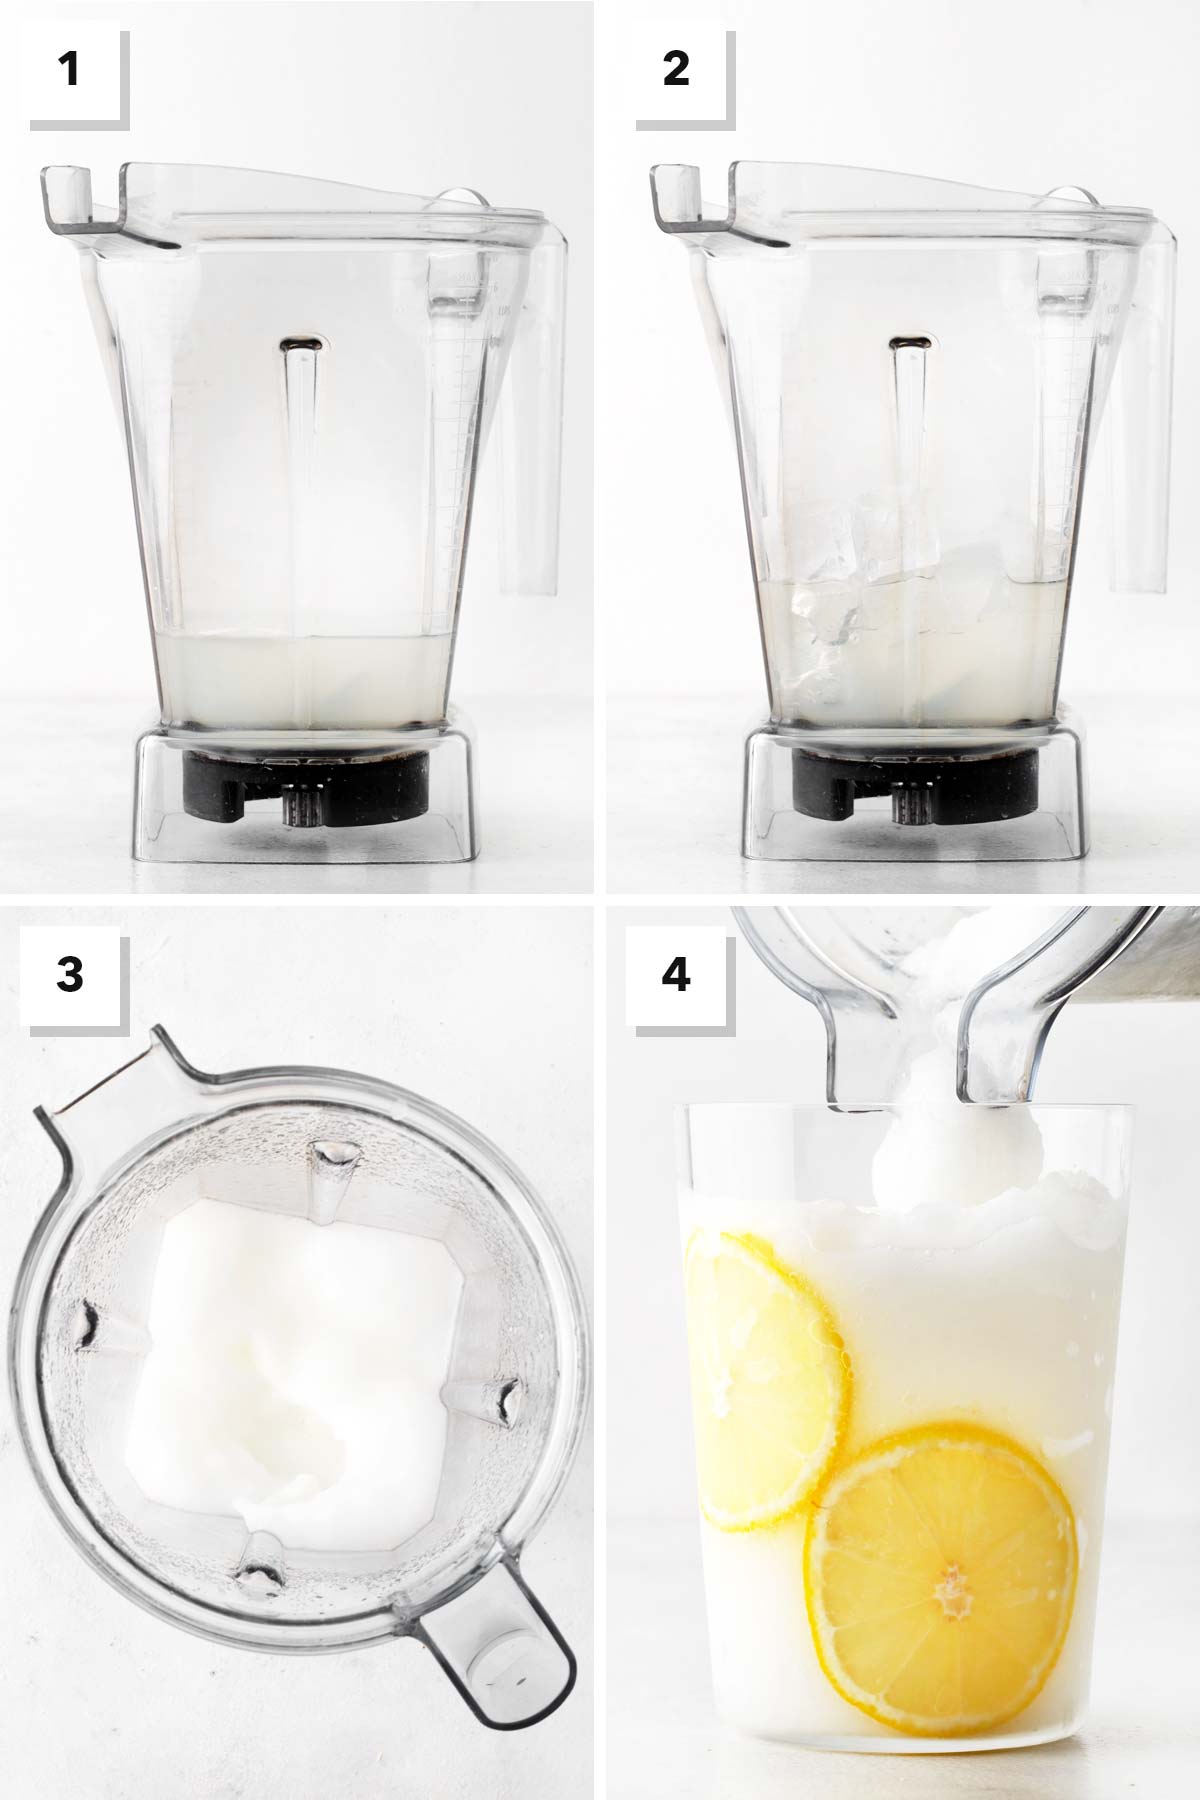 Steps for making frozen lemonade.